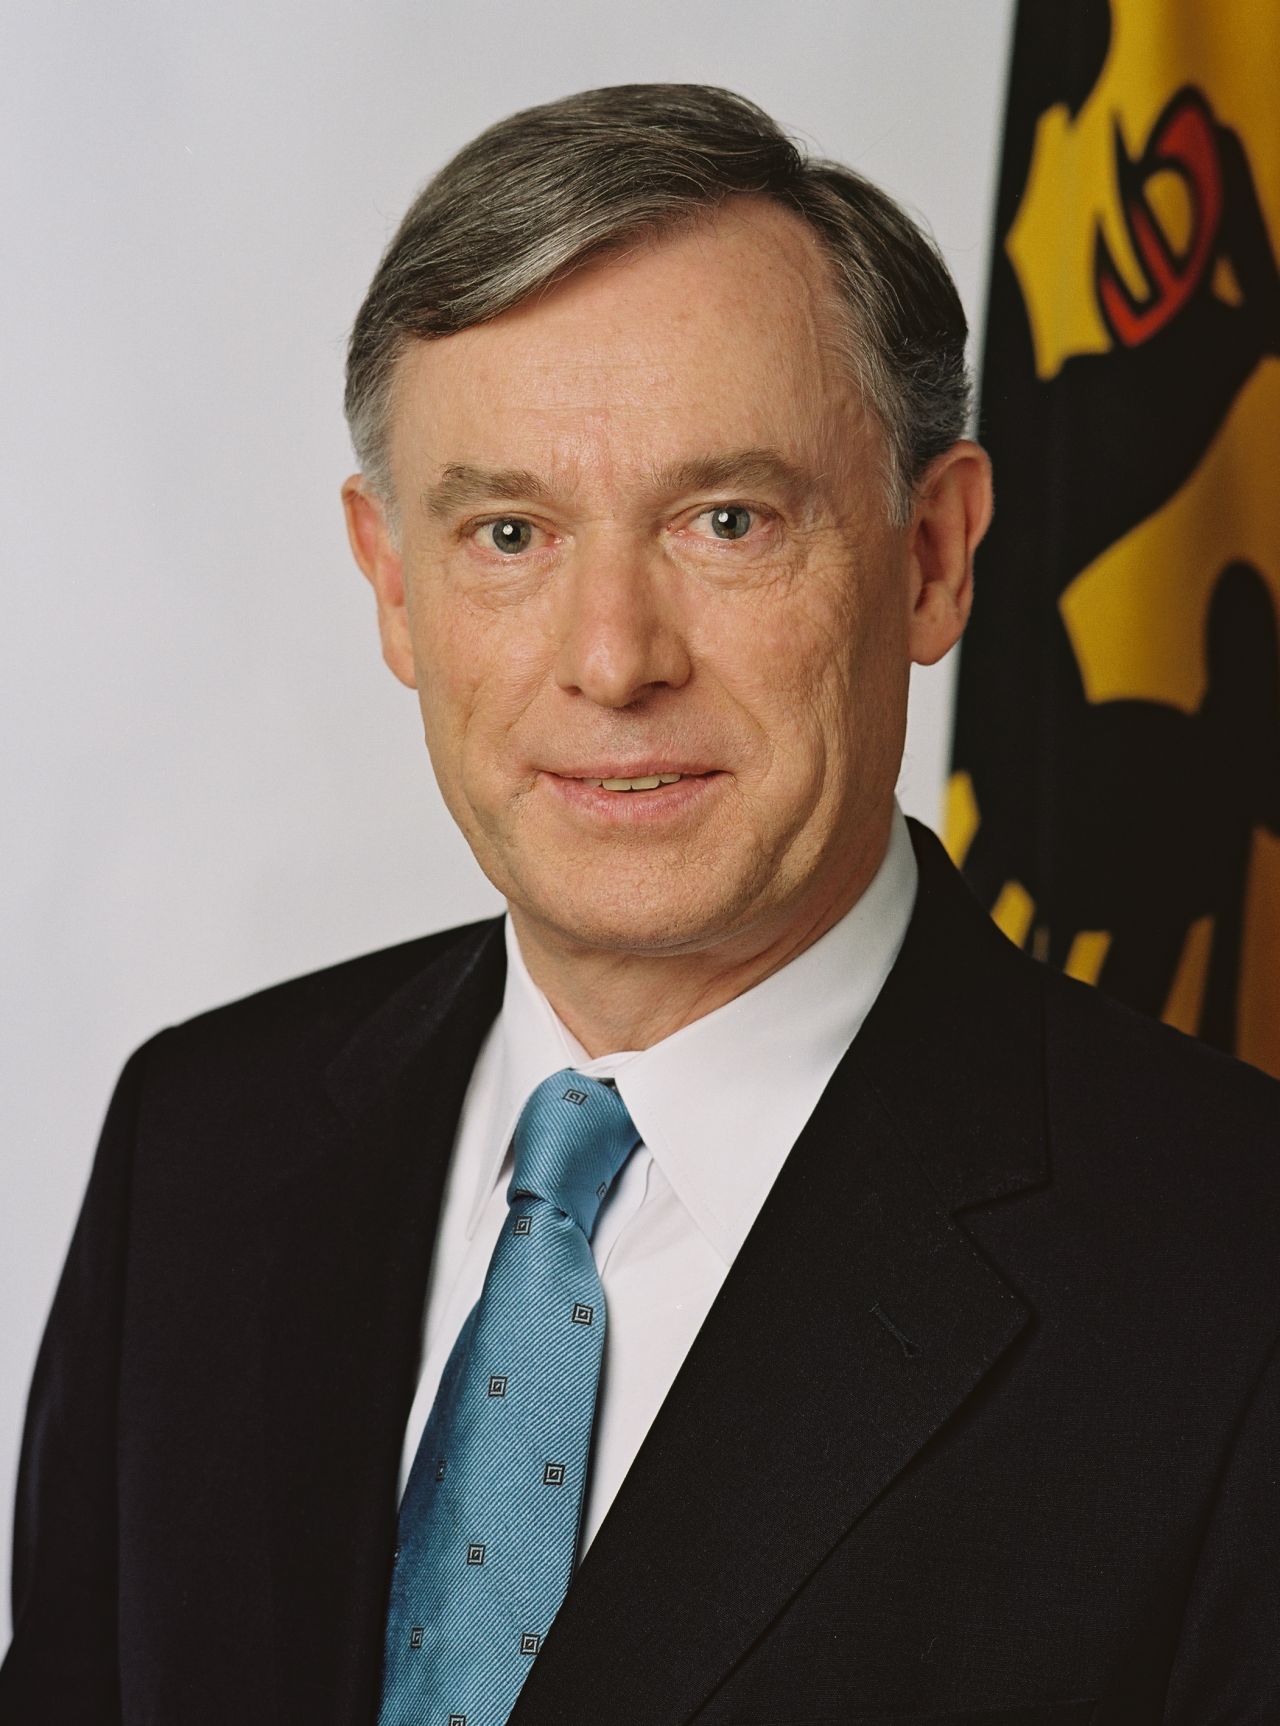 Offizielles Porträt des neunten Bundespräsidenten der Bundesrepublik Deutschland, Horst Köhler.